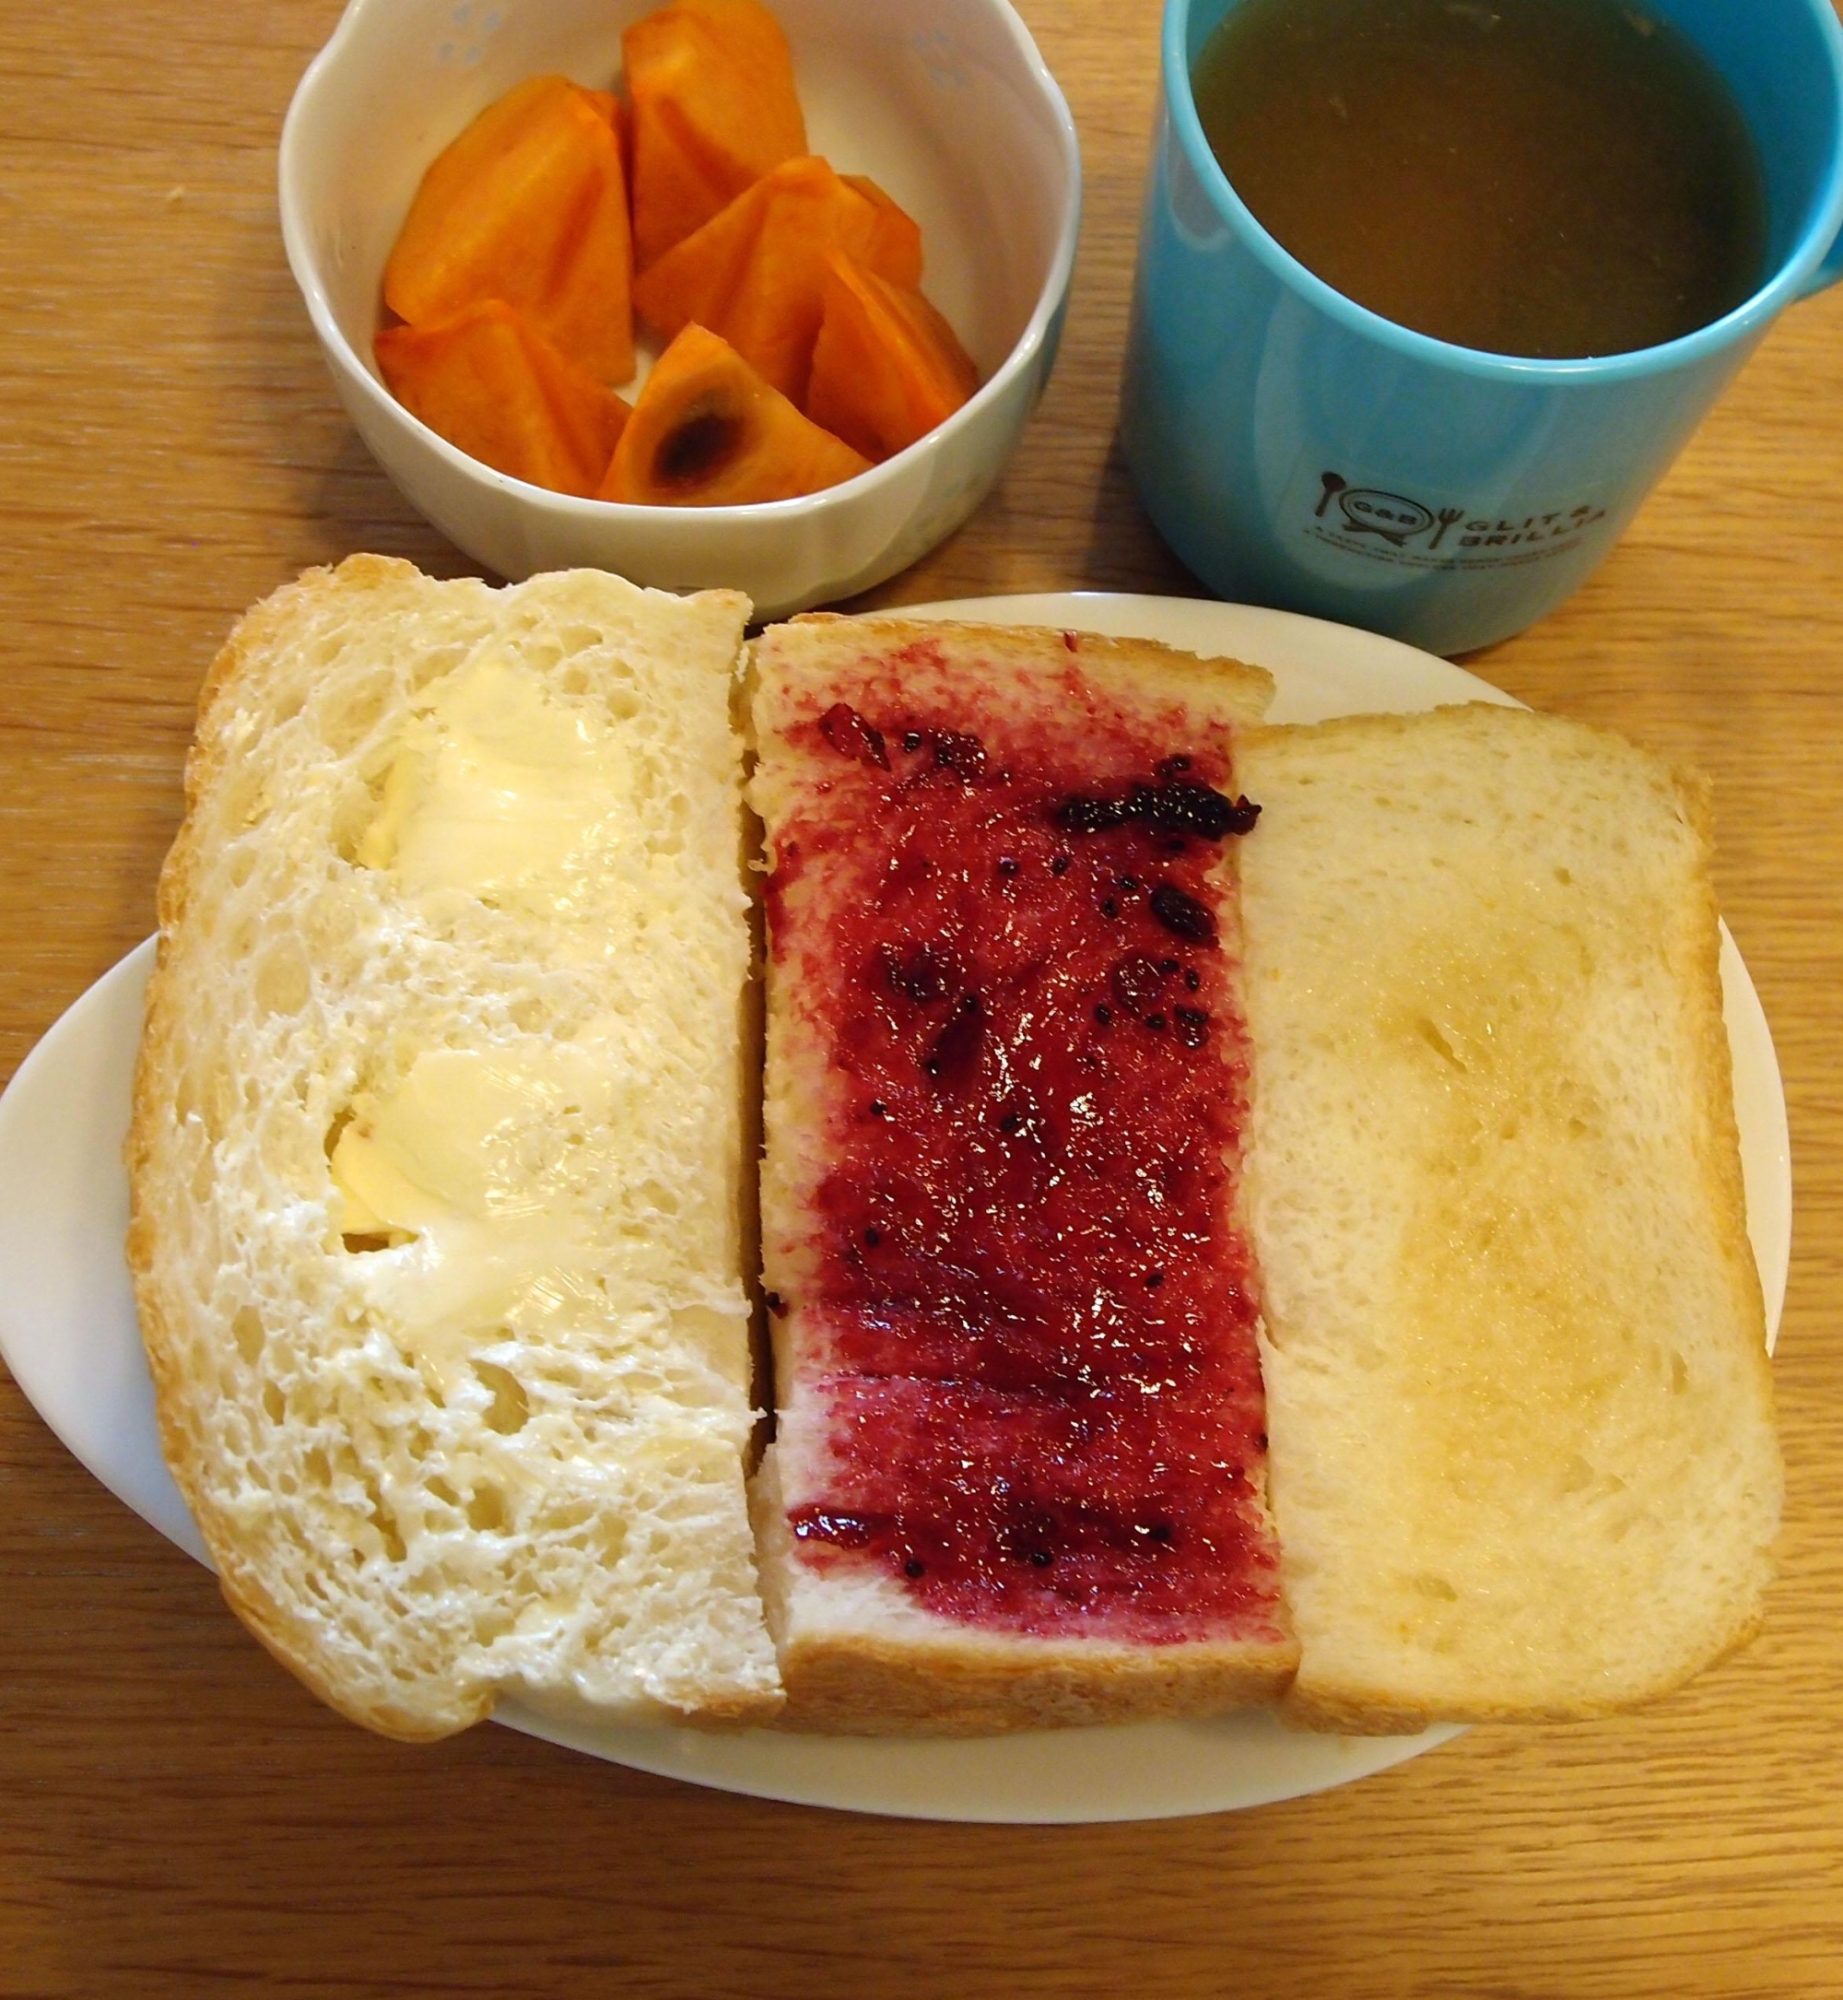 マーガリン&ジャム&蜂蜜パンと柿とカフェオレの朝食